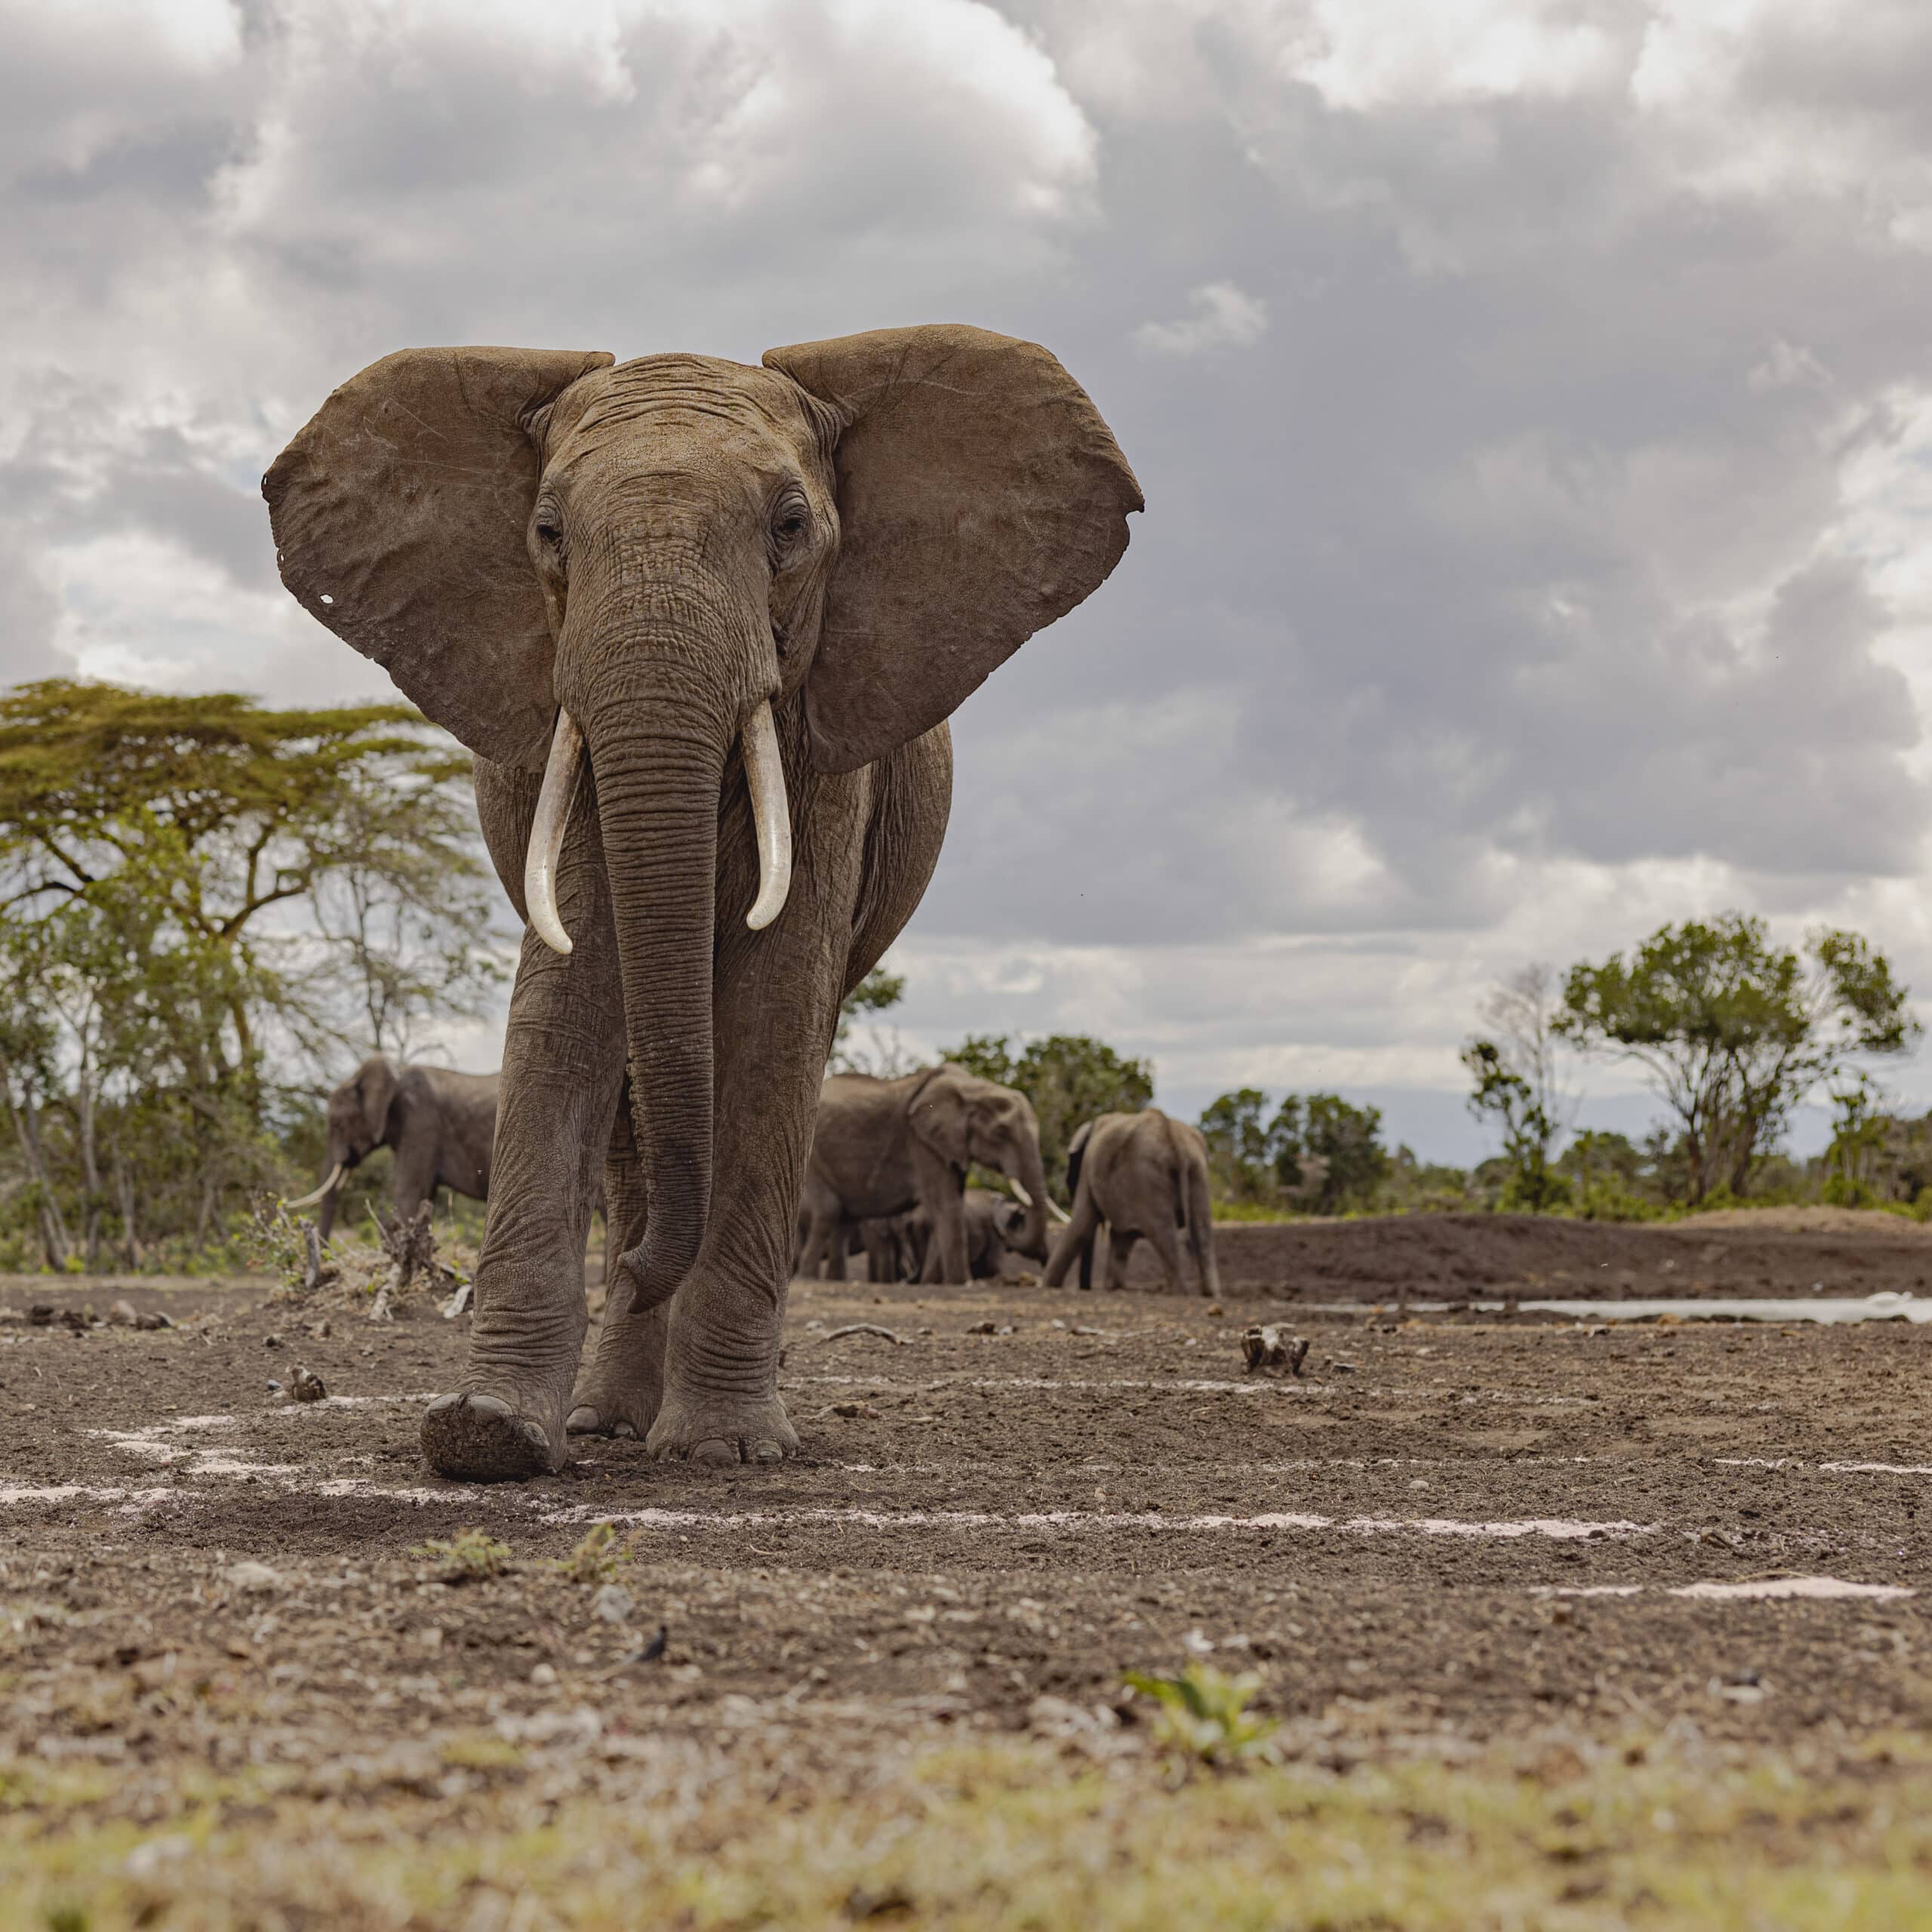 Ein afrikanischer Elefant mit großen Stoßzähnen nähert sich der Kamera. Im Hintergrund ist eine Herde unter einem bewölkten Himmel in einer Savannenlandschaft zu sehen. © Fotografie Tomas Rodriguez